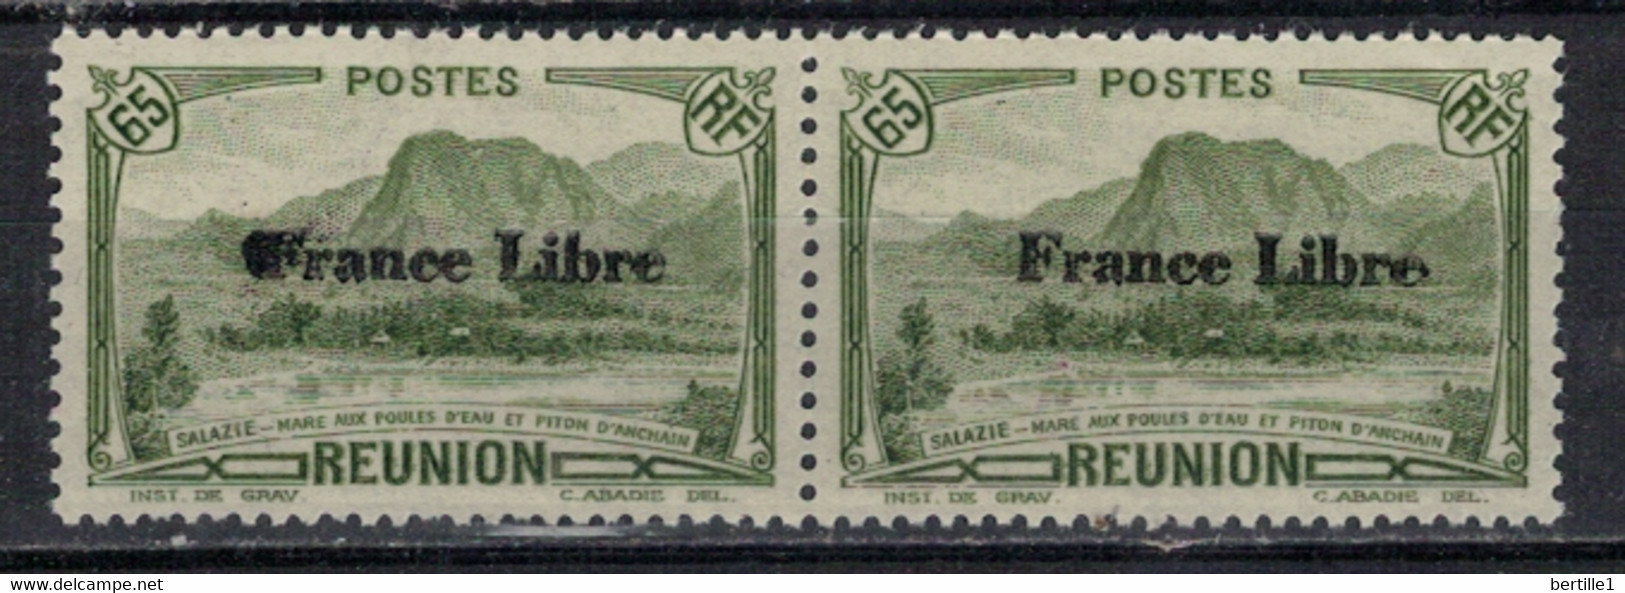 REUNION           N° YVERT    198 X 2 (Tache Sur F De France)    NEUF SANS CHARNIERES     ( NSCH  4 ) - Unused Stamps